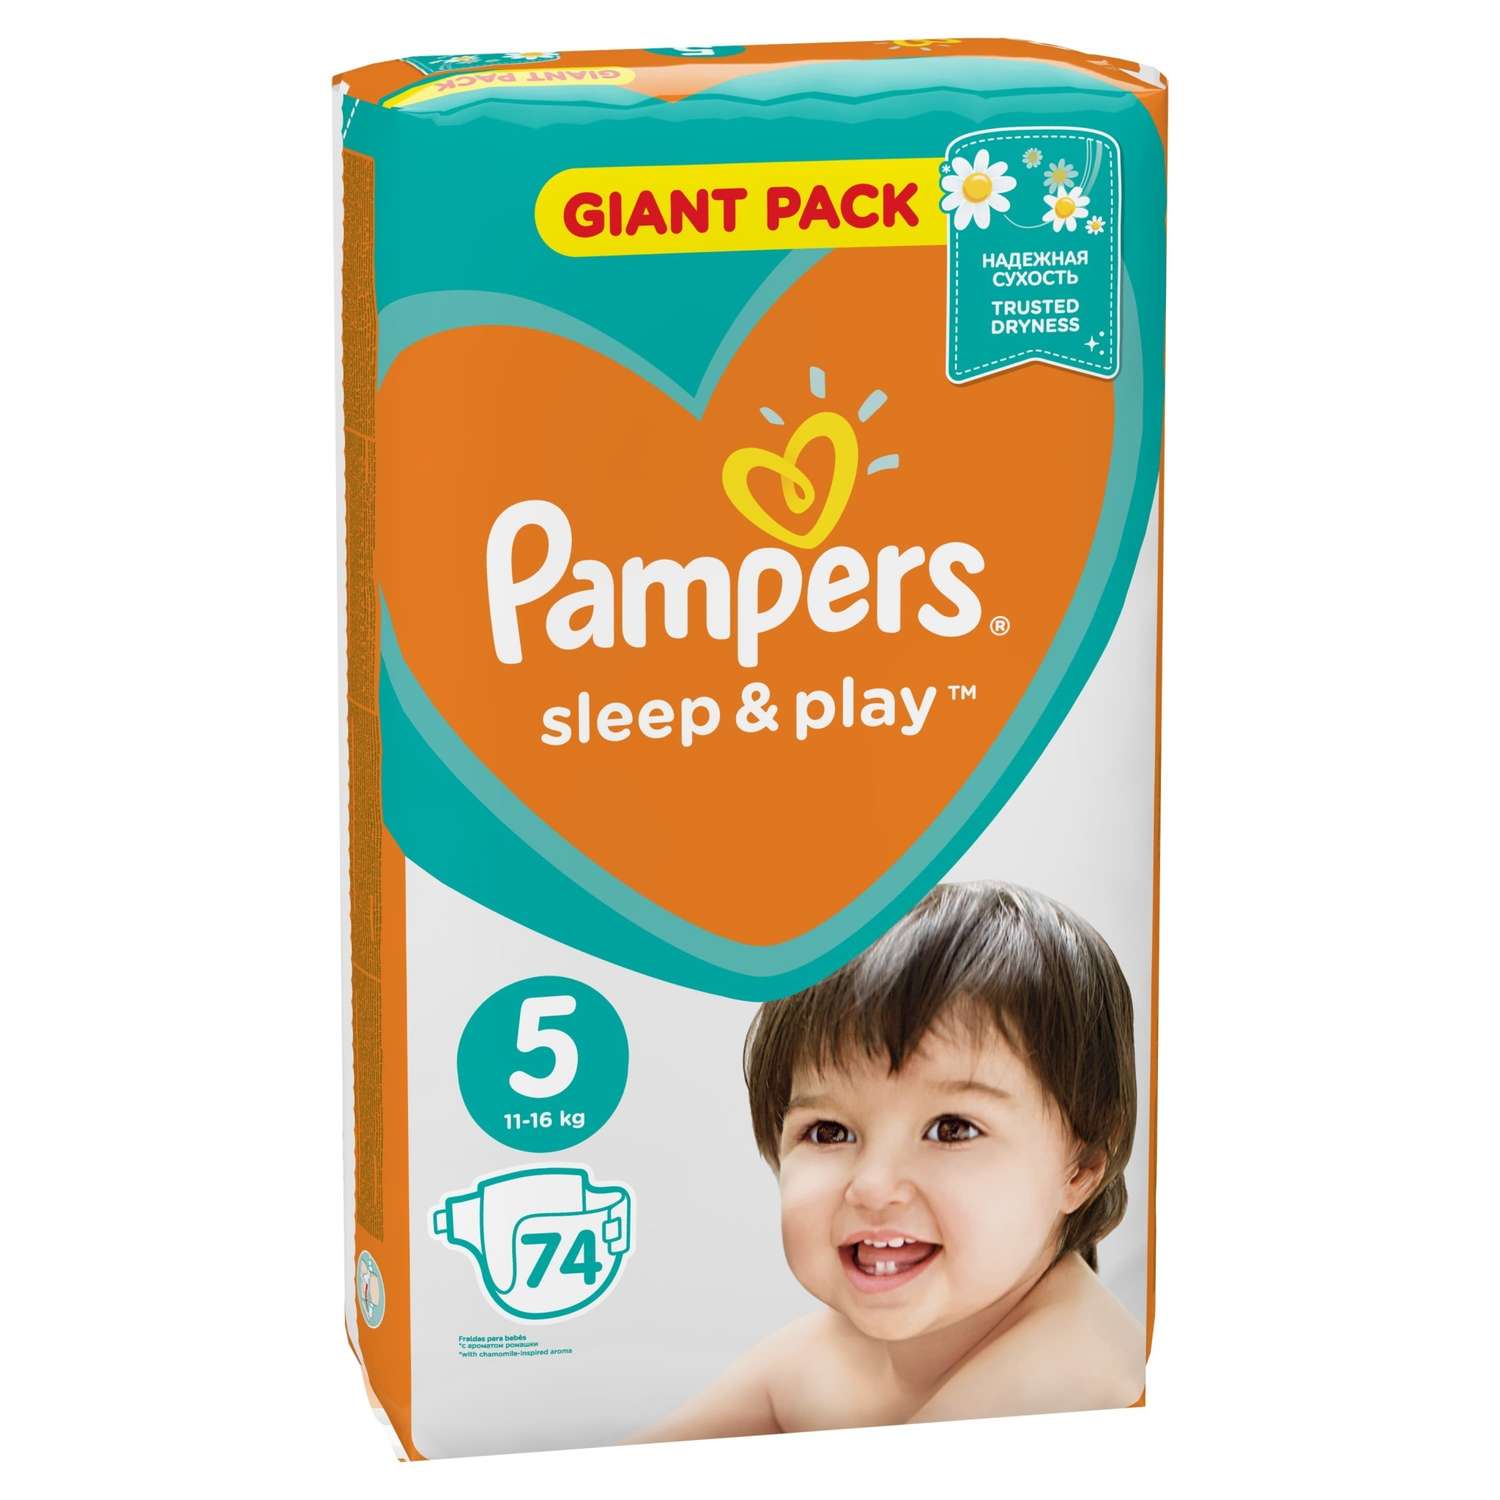 Подгузники Pampers Sleep and Play 5 11-16кг 74шт - фото 3